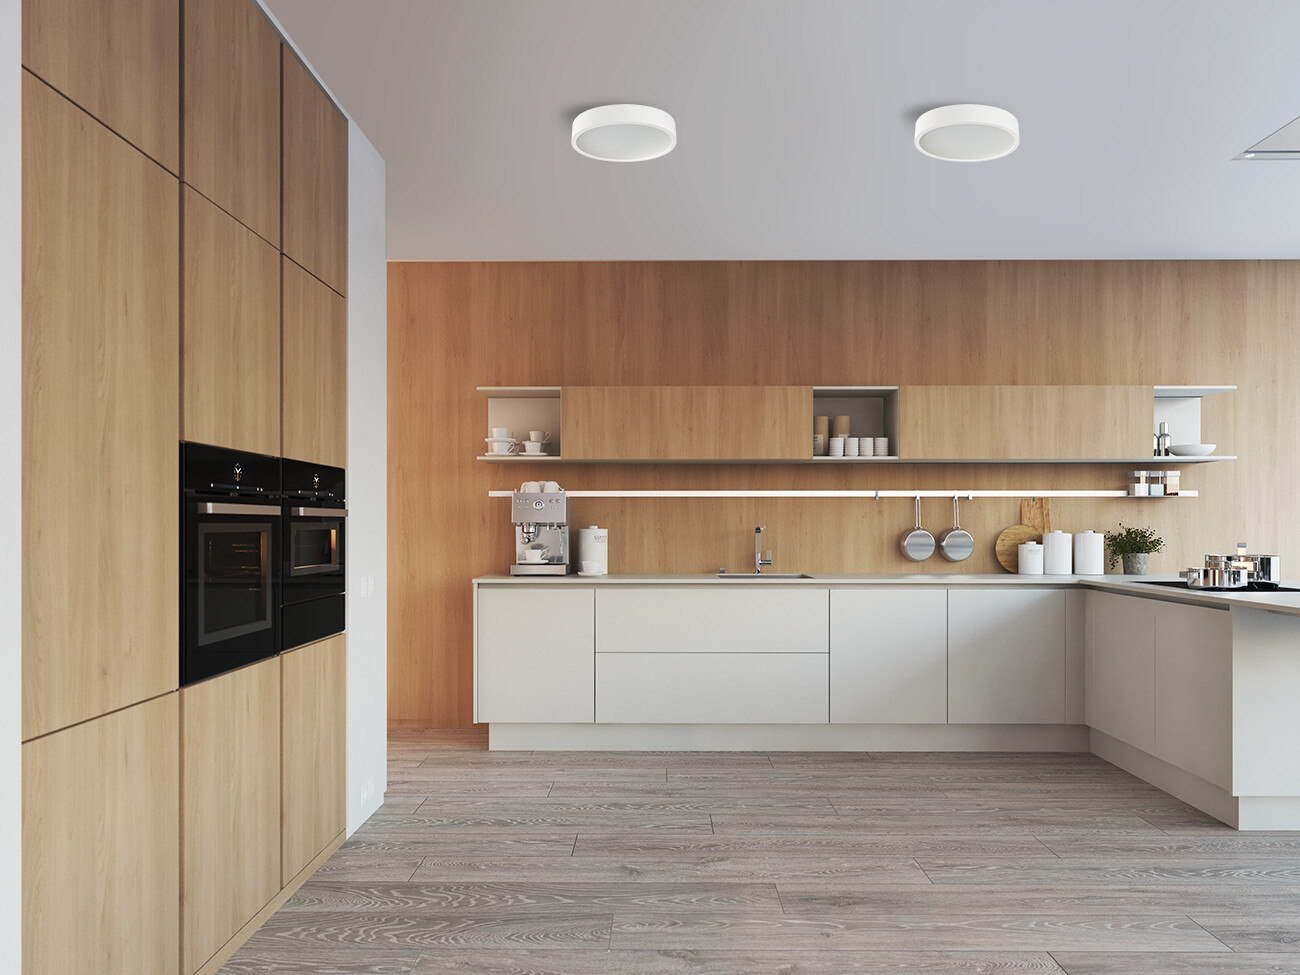 LEDy w kuchni: Jak oświetlenie może poprawić atmosferę i wydajność? - 7